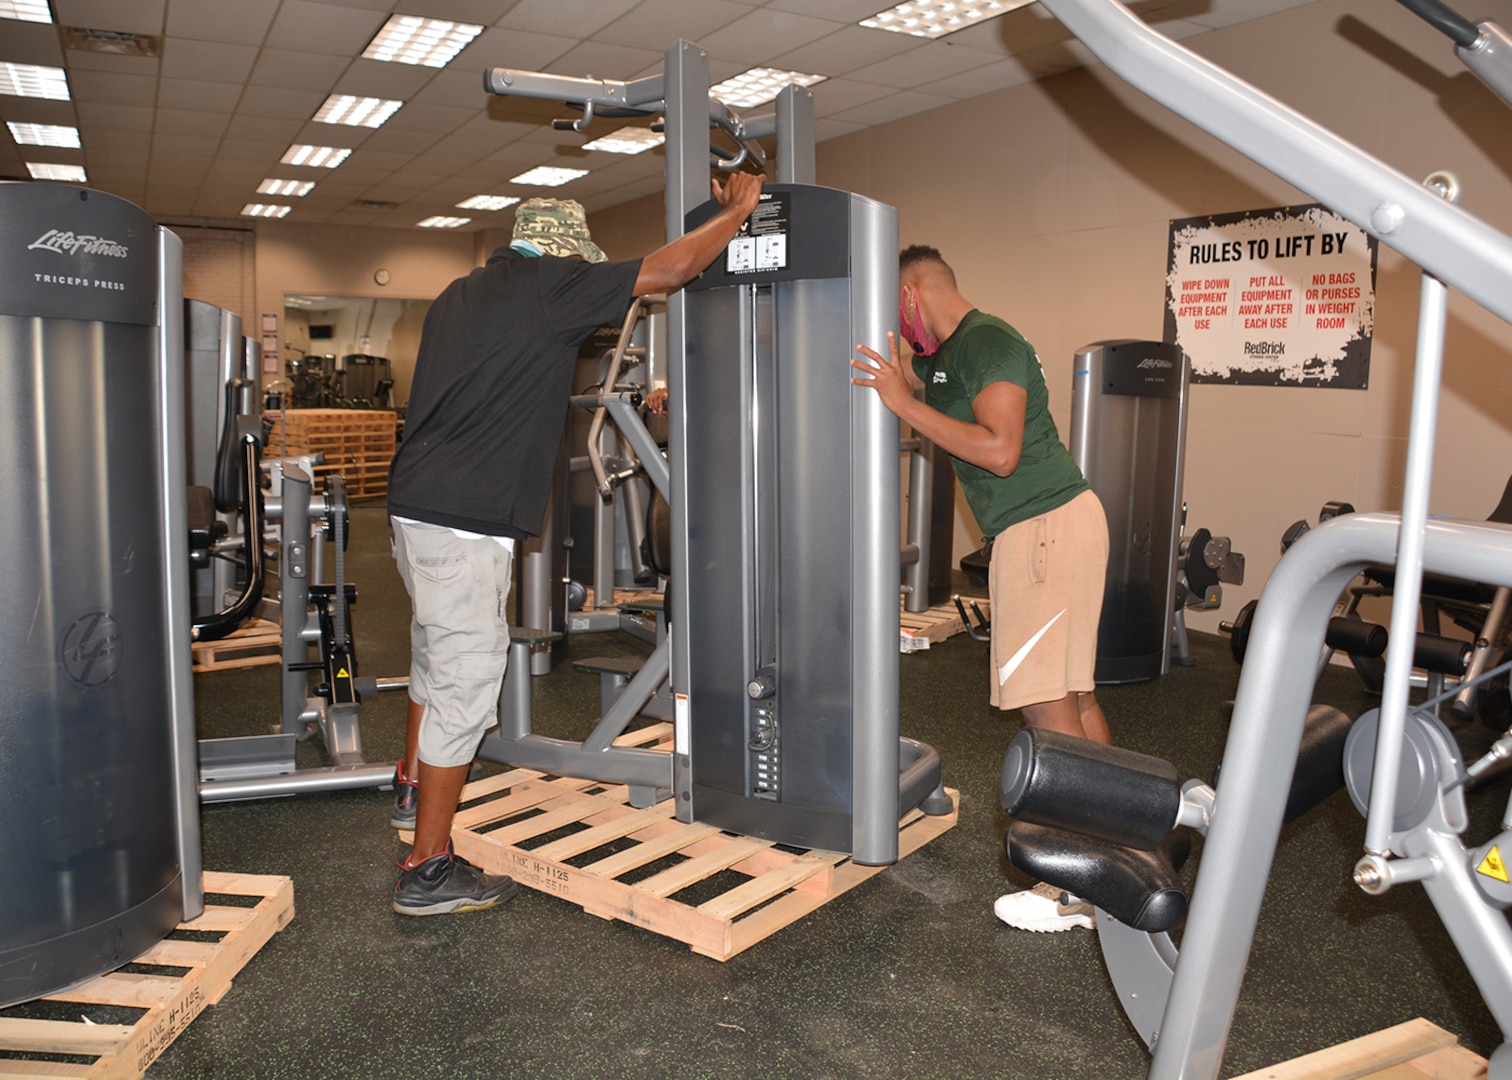 Fitness Center move involves plenty of sweat, heavy lifting